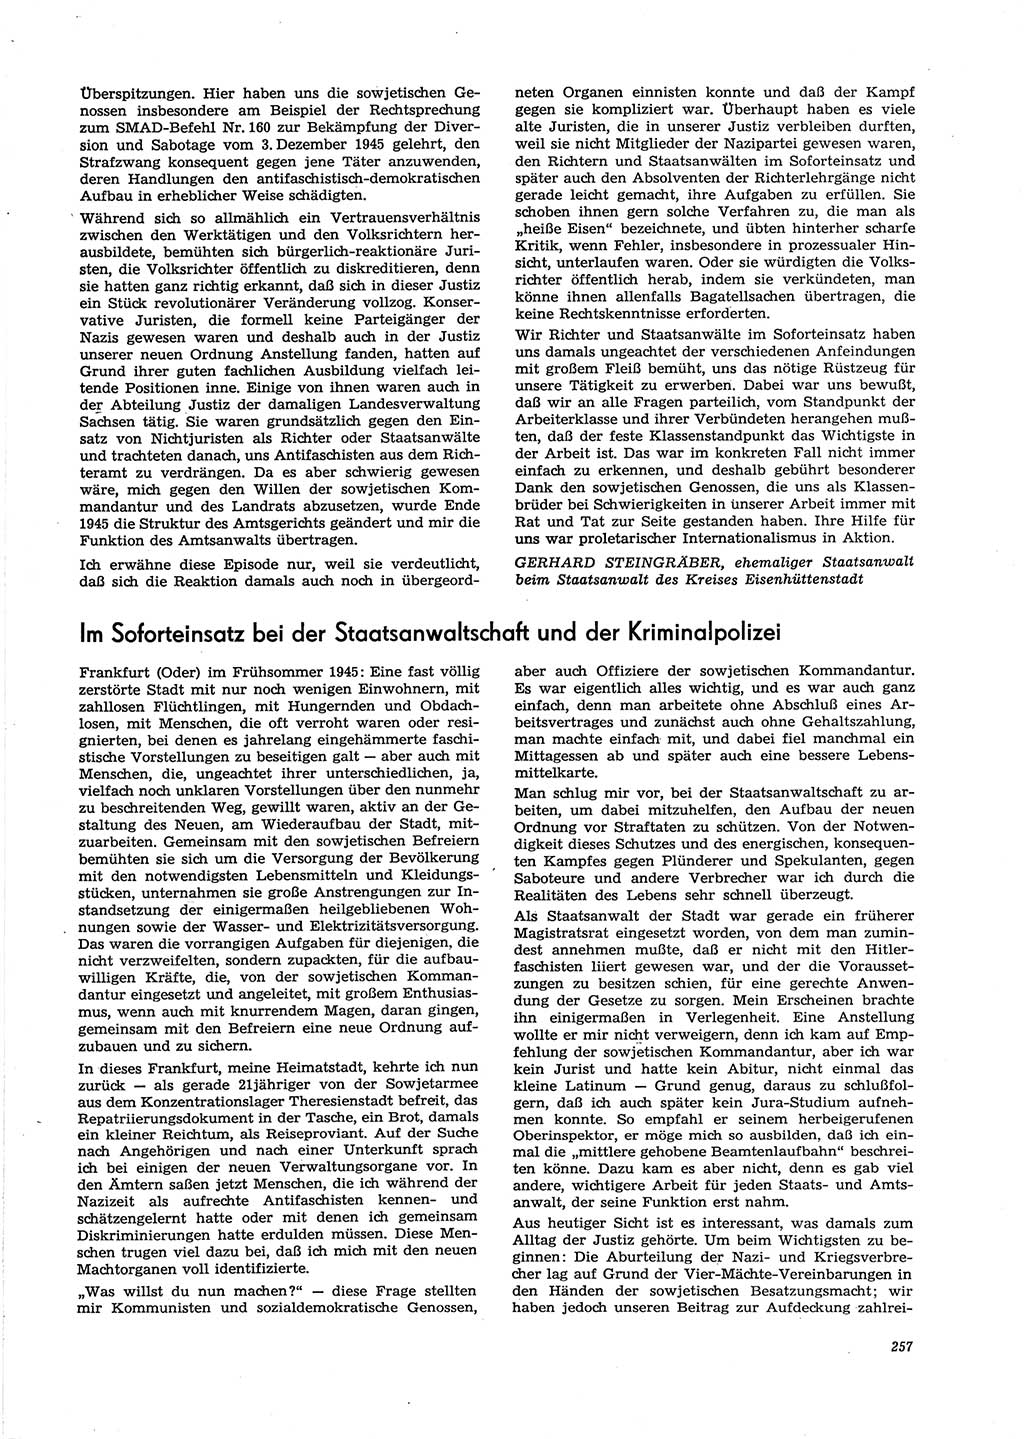 Neue Justiz (NJ), Zeitschrift für Recht und Rechtswissenschaft [Deutsche Demokratische Republik (DDR)], 29. Jahrgang 1975, Seite 257 (NJ DDR 1975, S. 257)